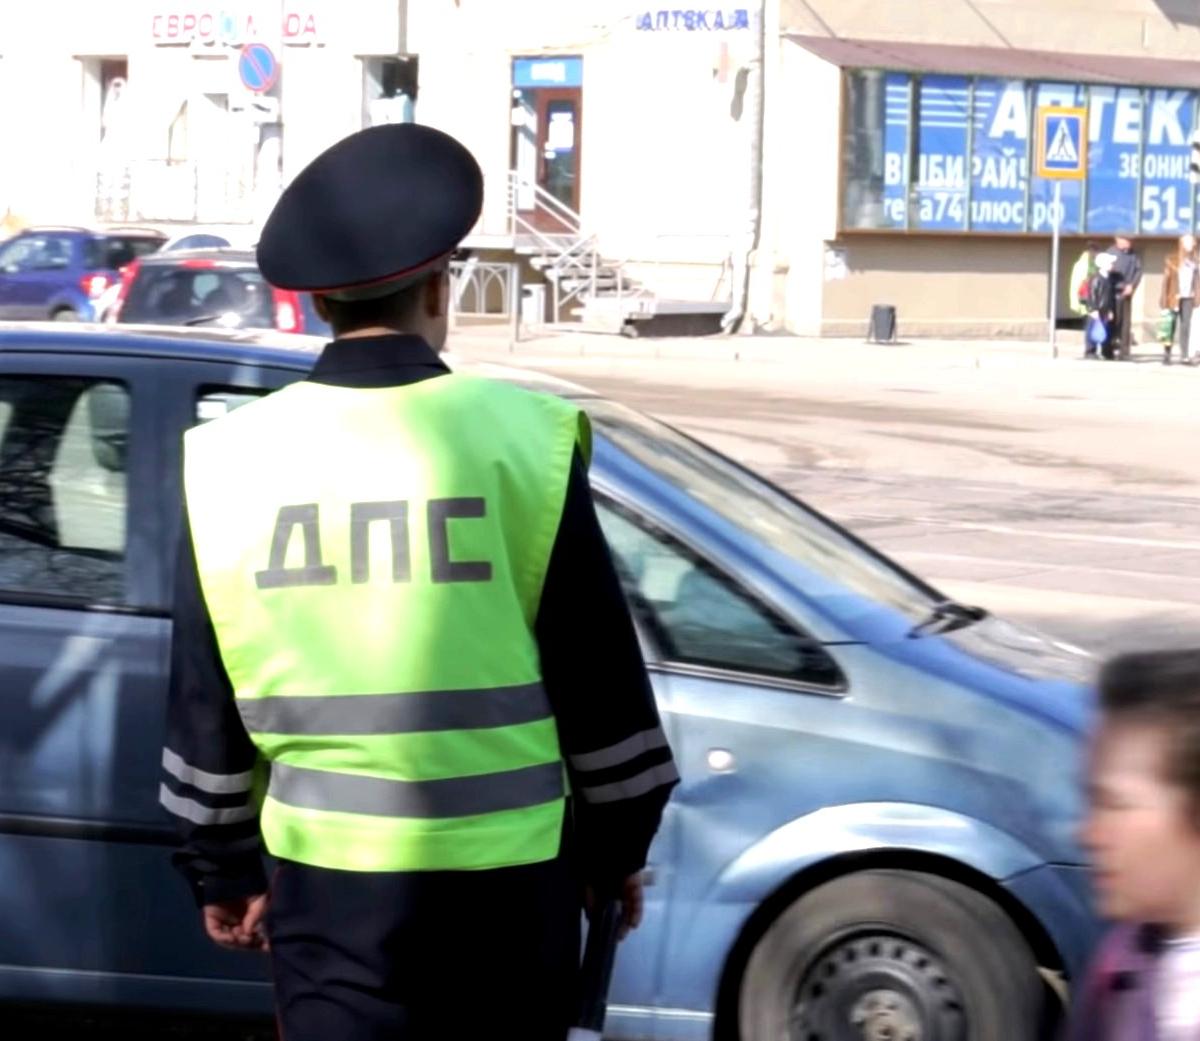 Trafik polisi artık küçük ihlaller için ceza kesmeyecek